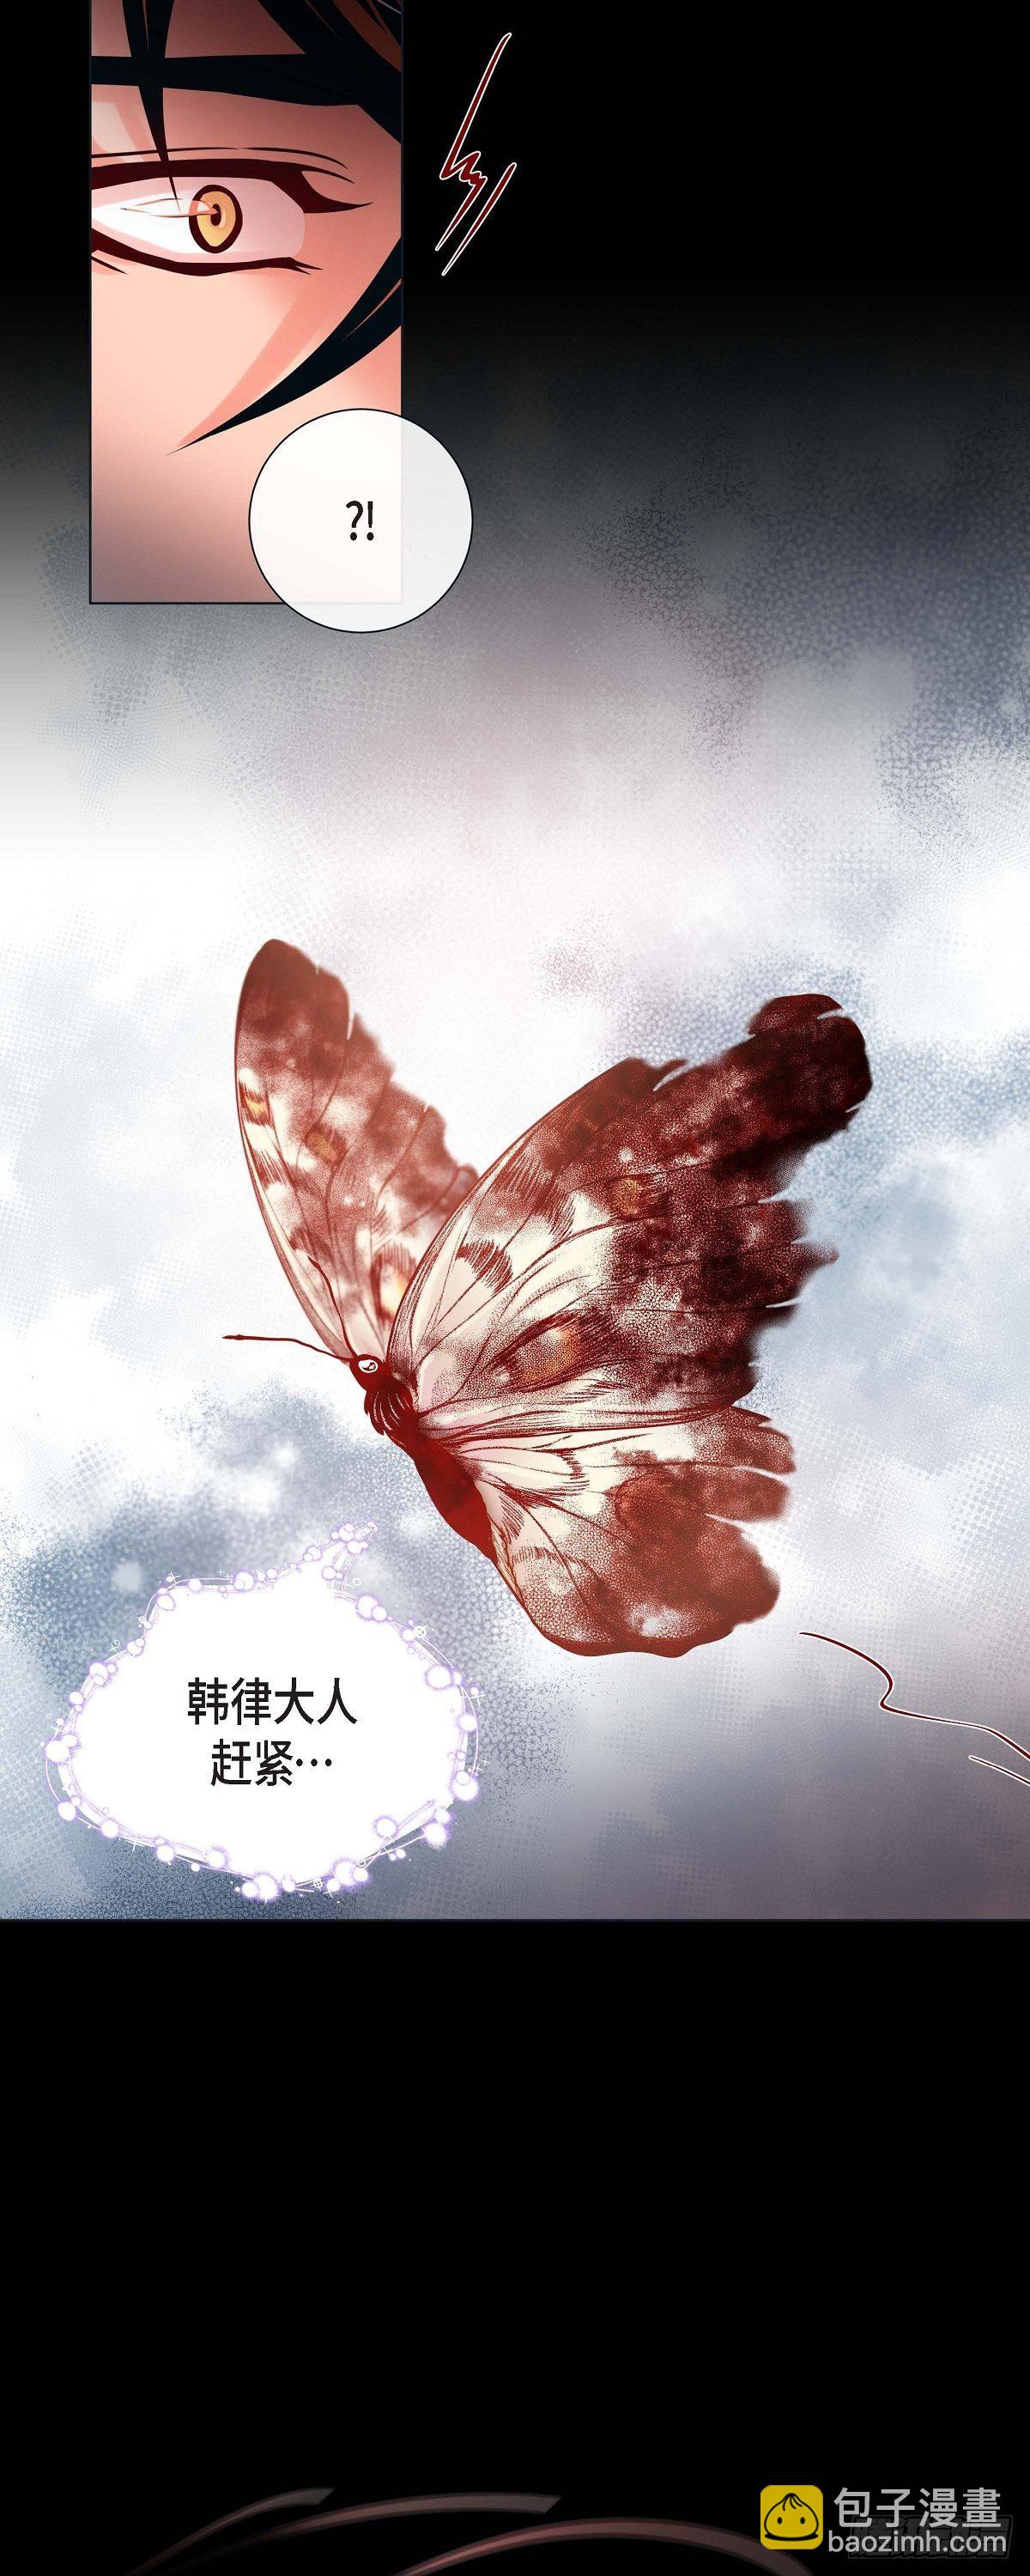 蝴蝶，俘获老虎 - 26 韩律的落泪 - 5